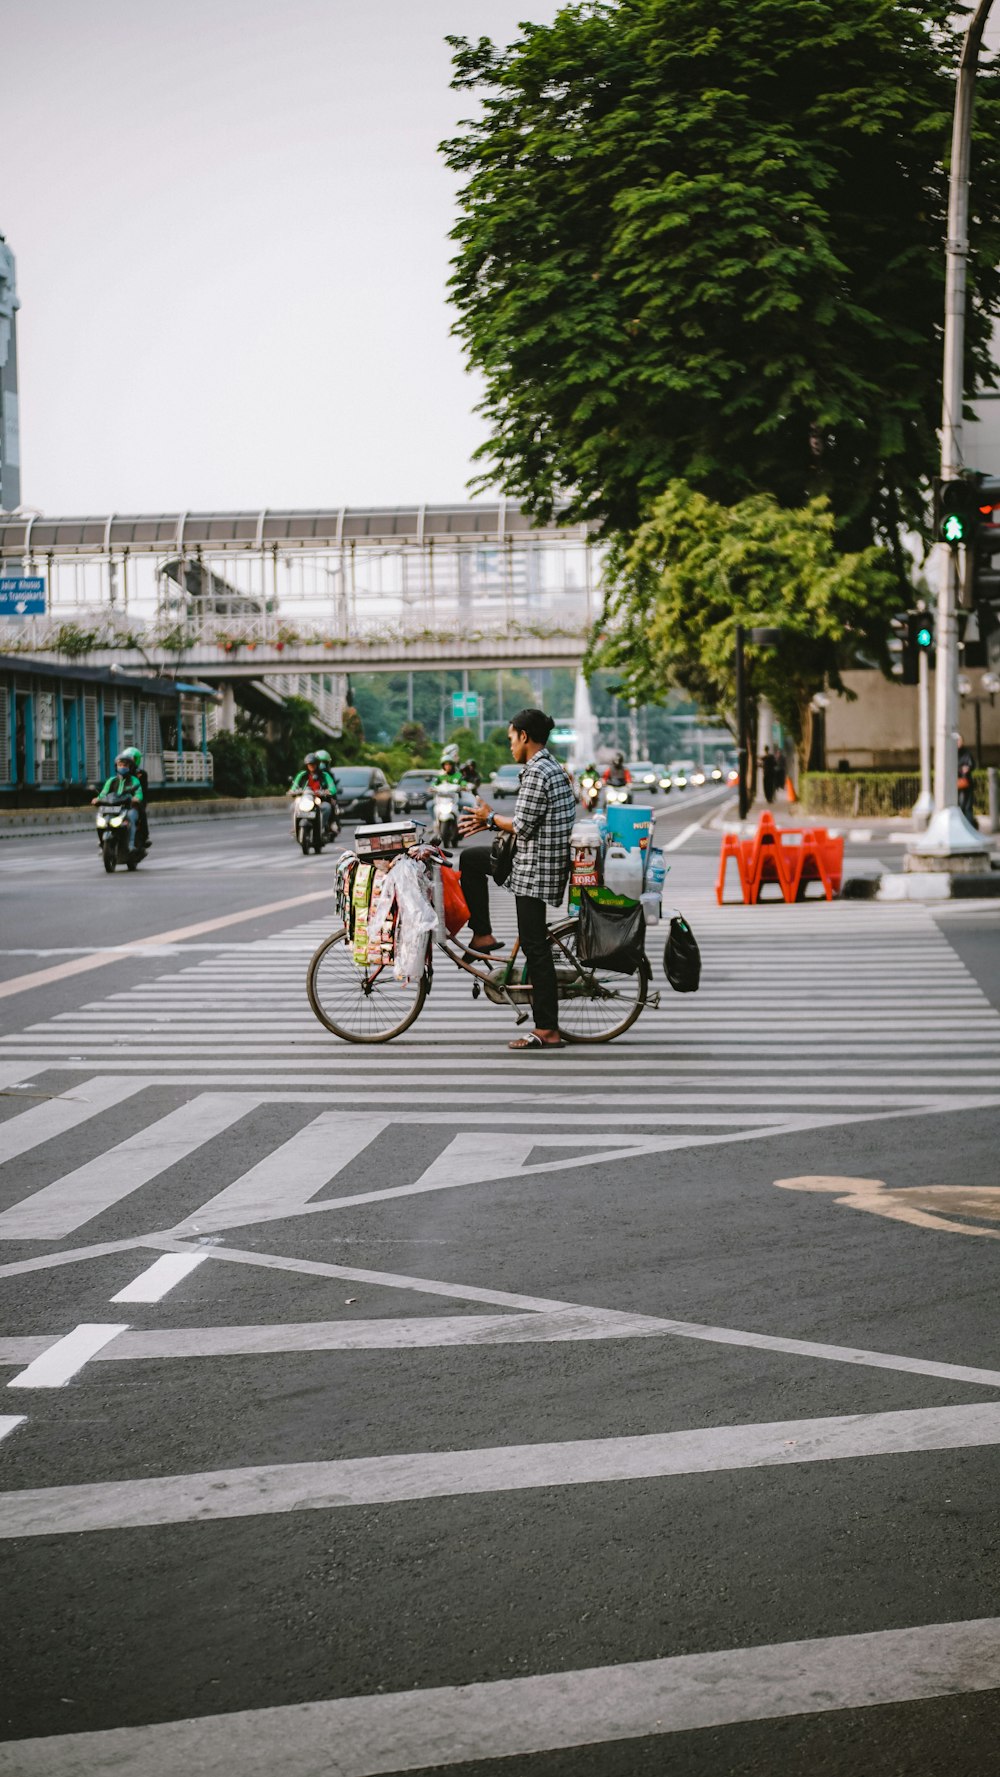 people riding bicycles on pedestrian lane during daytime